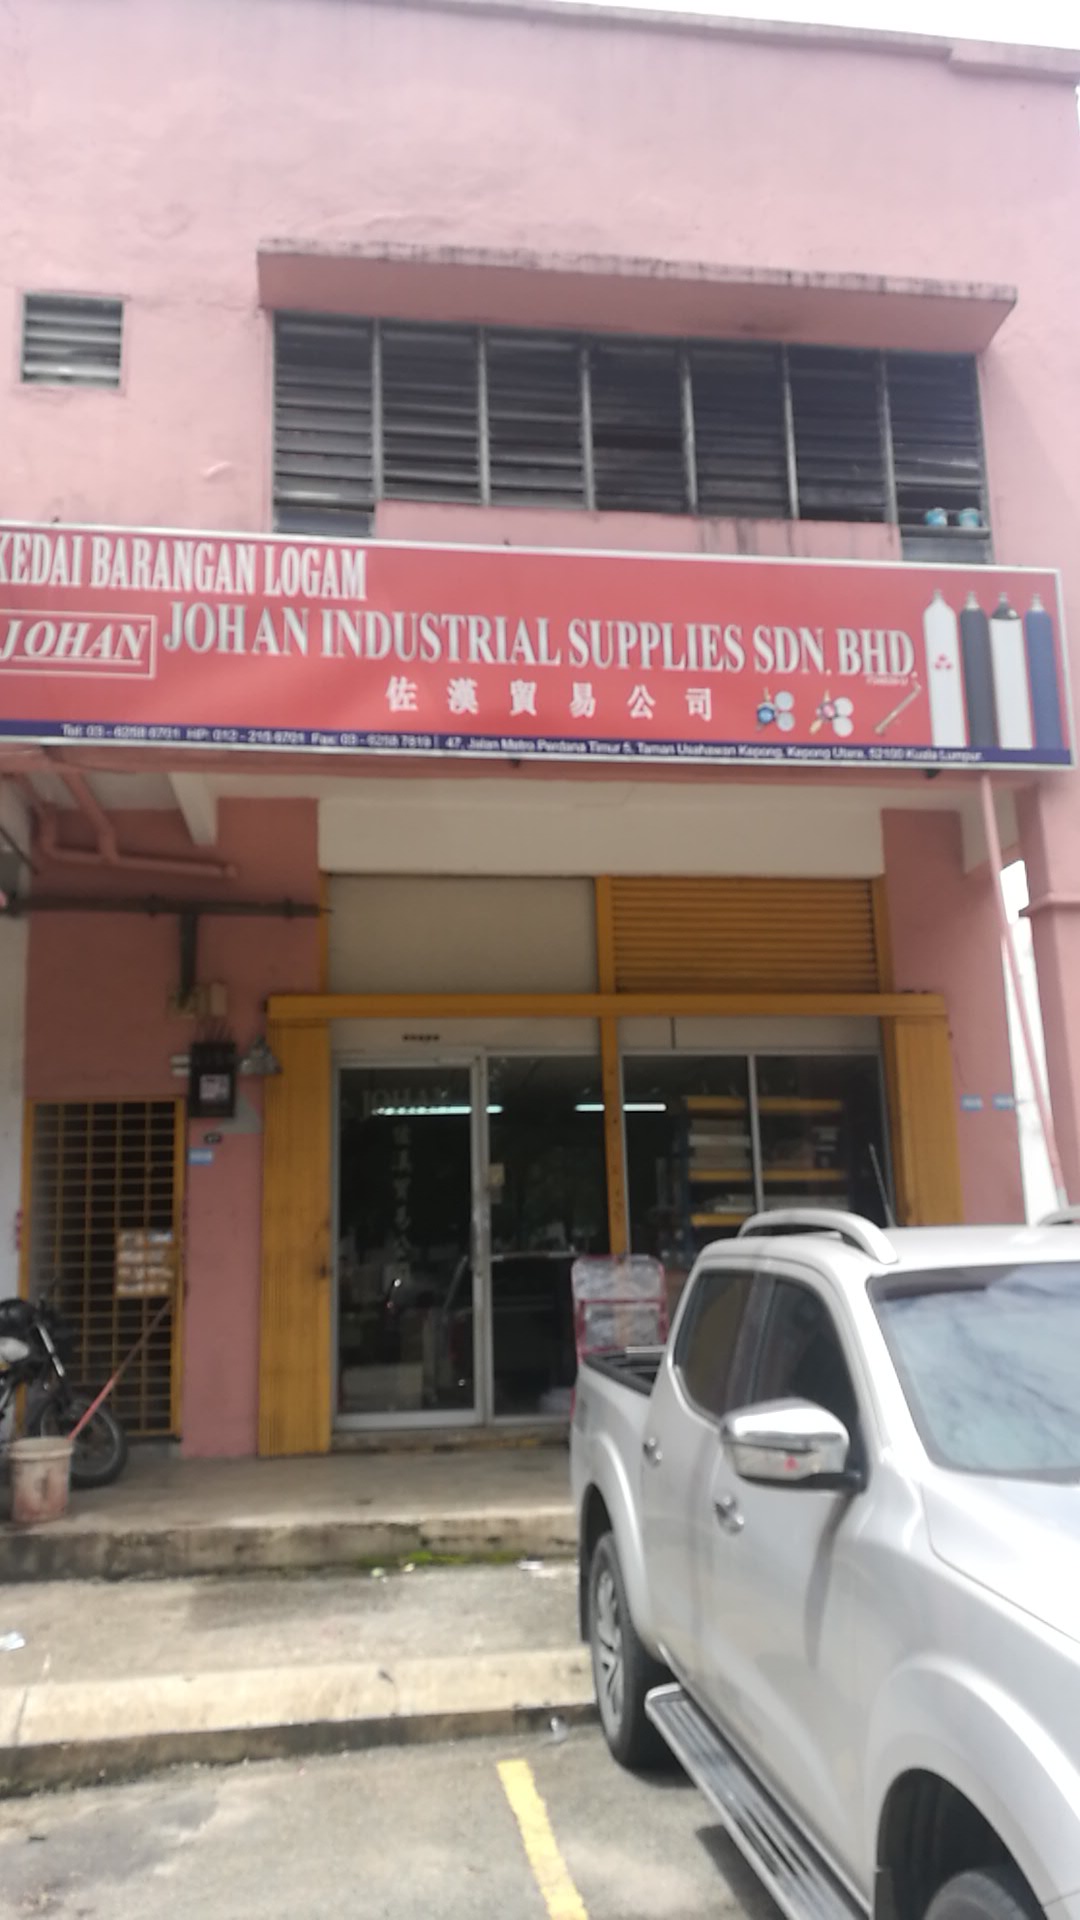 Johan Industrial Supplies Sdn. Bhd.